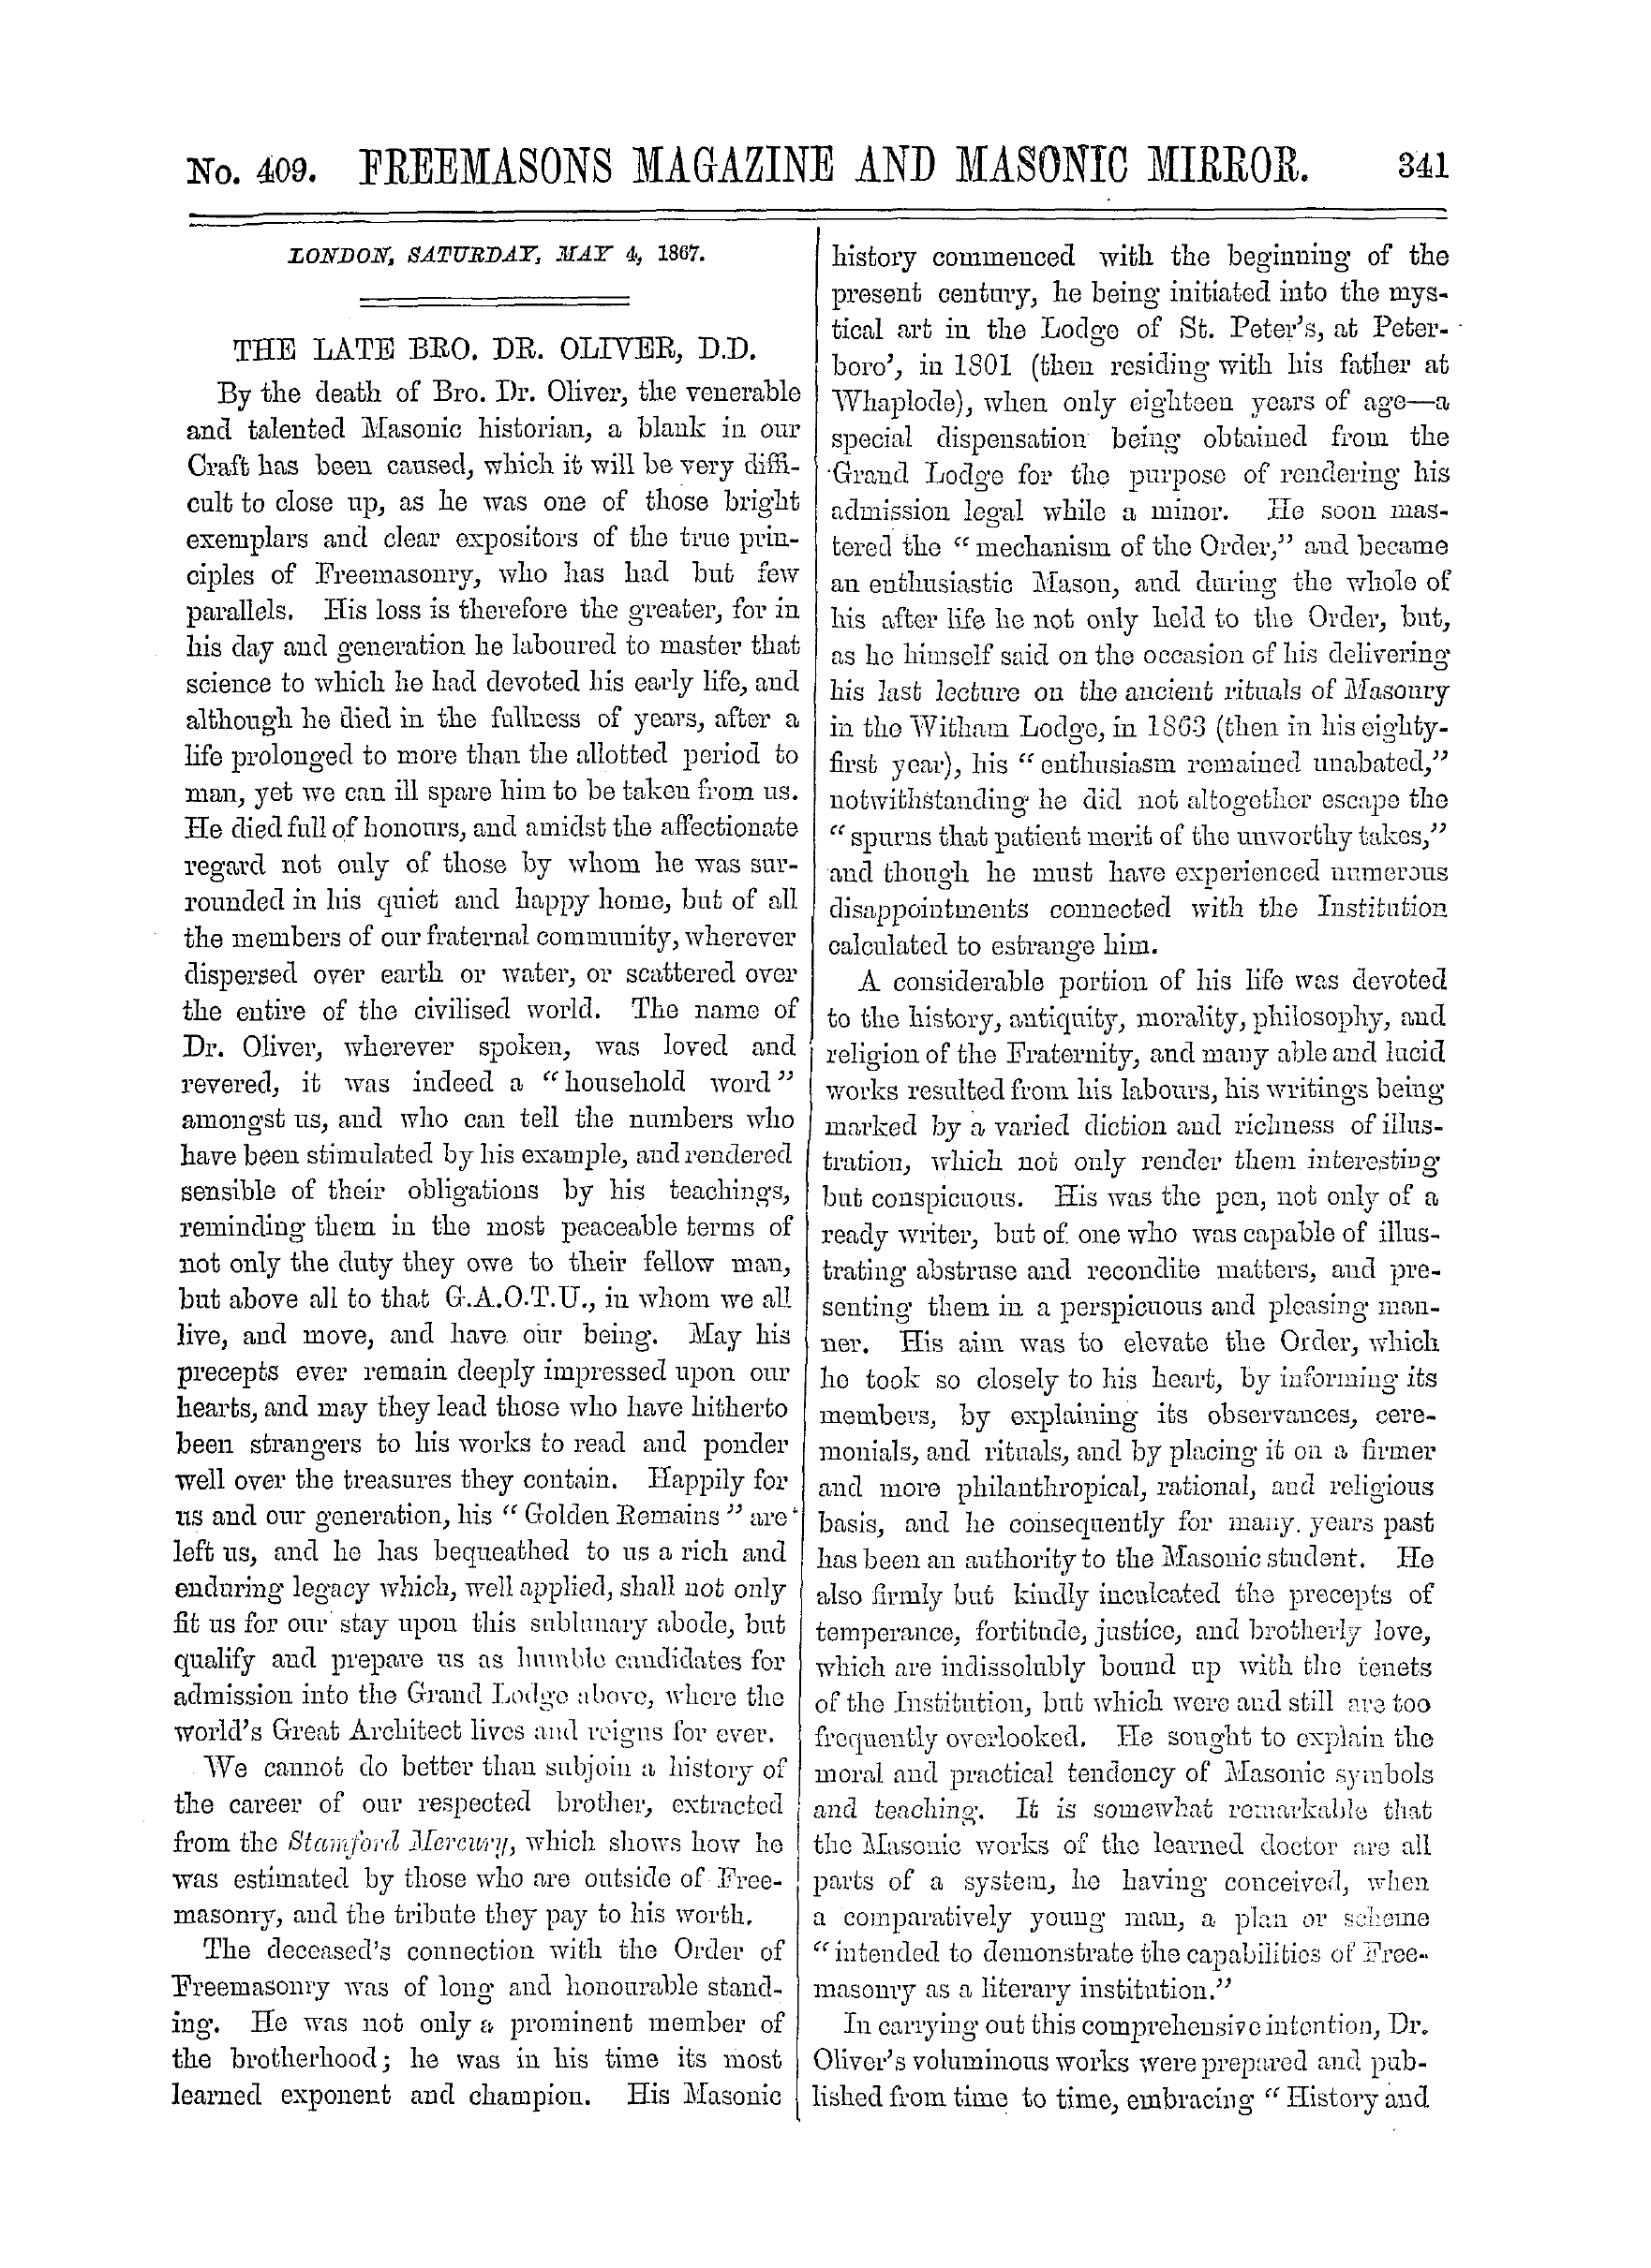 The Freemasons' Monthly Magazine: 1867-05-04: 1